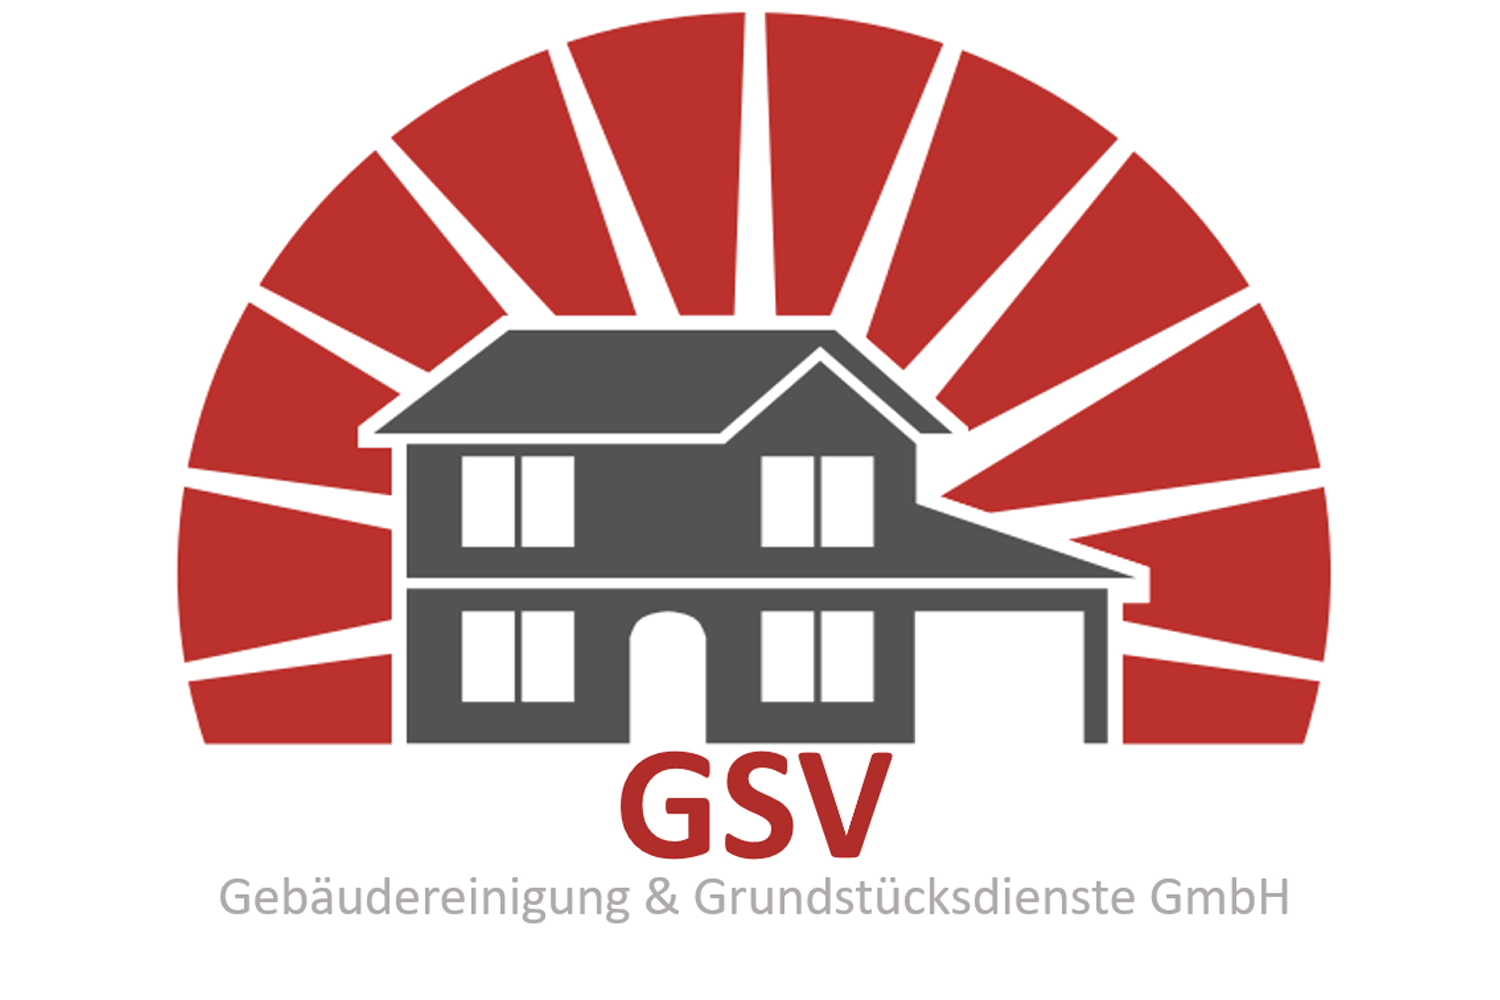 Bild 1 GSV Gebäudereinigung & Grundstücksdienste GmbH in Dessau-Roßlau